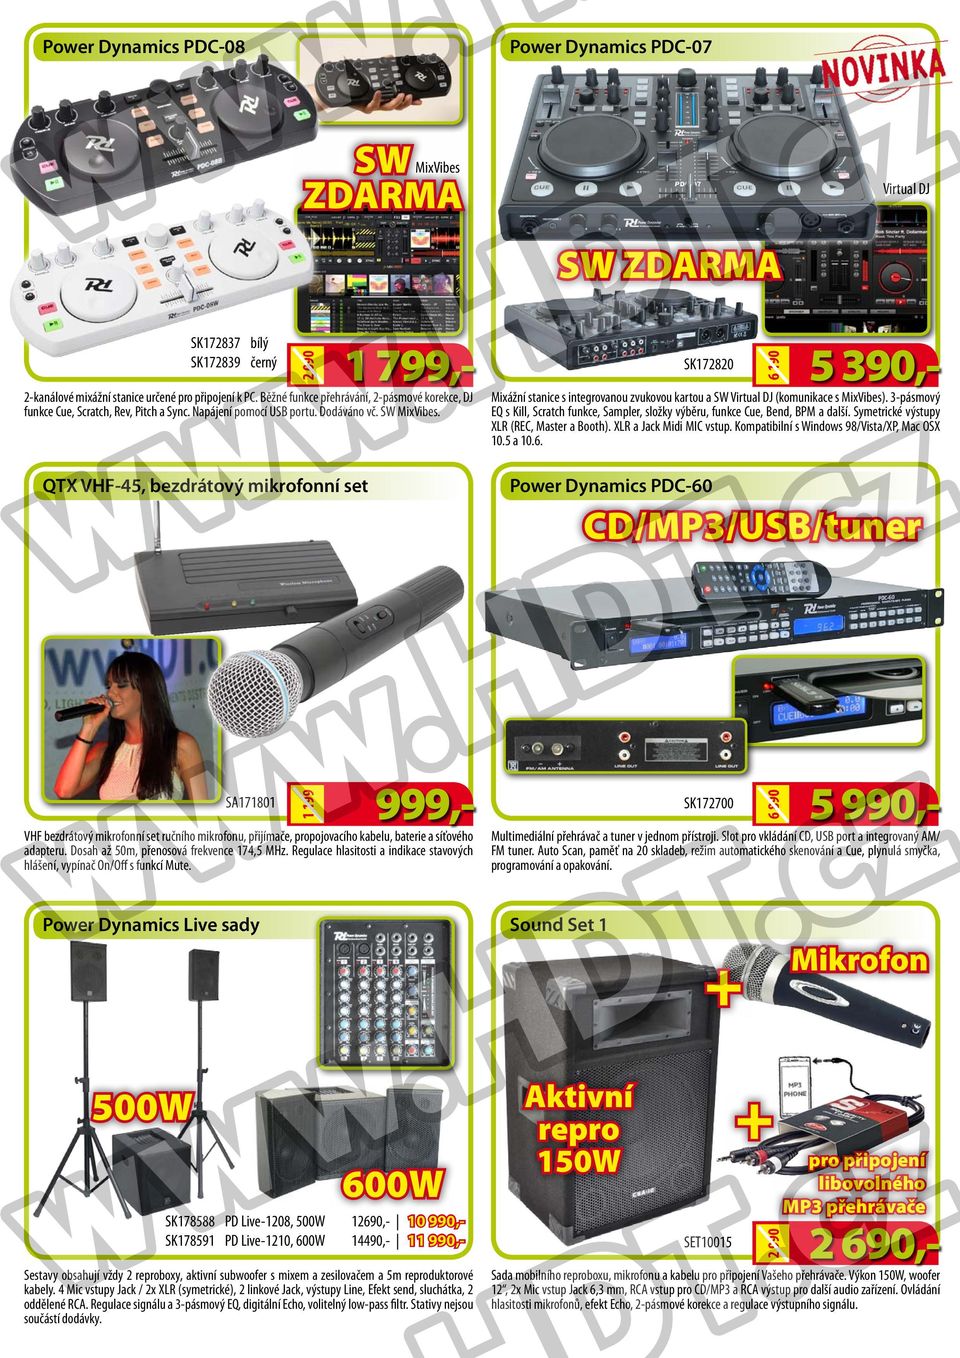 QTX VHF-45, bezdrátový mikrofonní set SA171801 1 799,- 999,- VHF bezdrátový mikrofonní set ručního mikrofonu, přijímače, propojovacího kabelu, baterie a síťového adapteru.